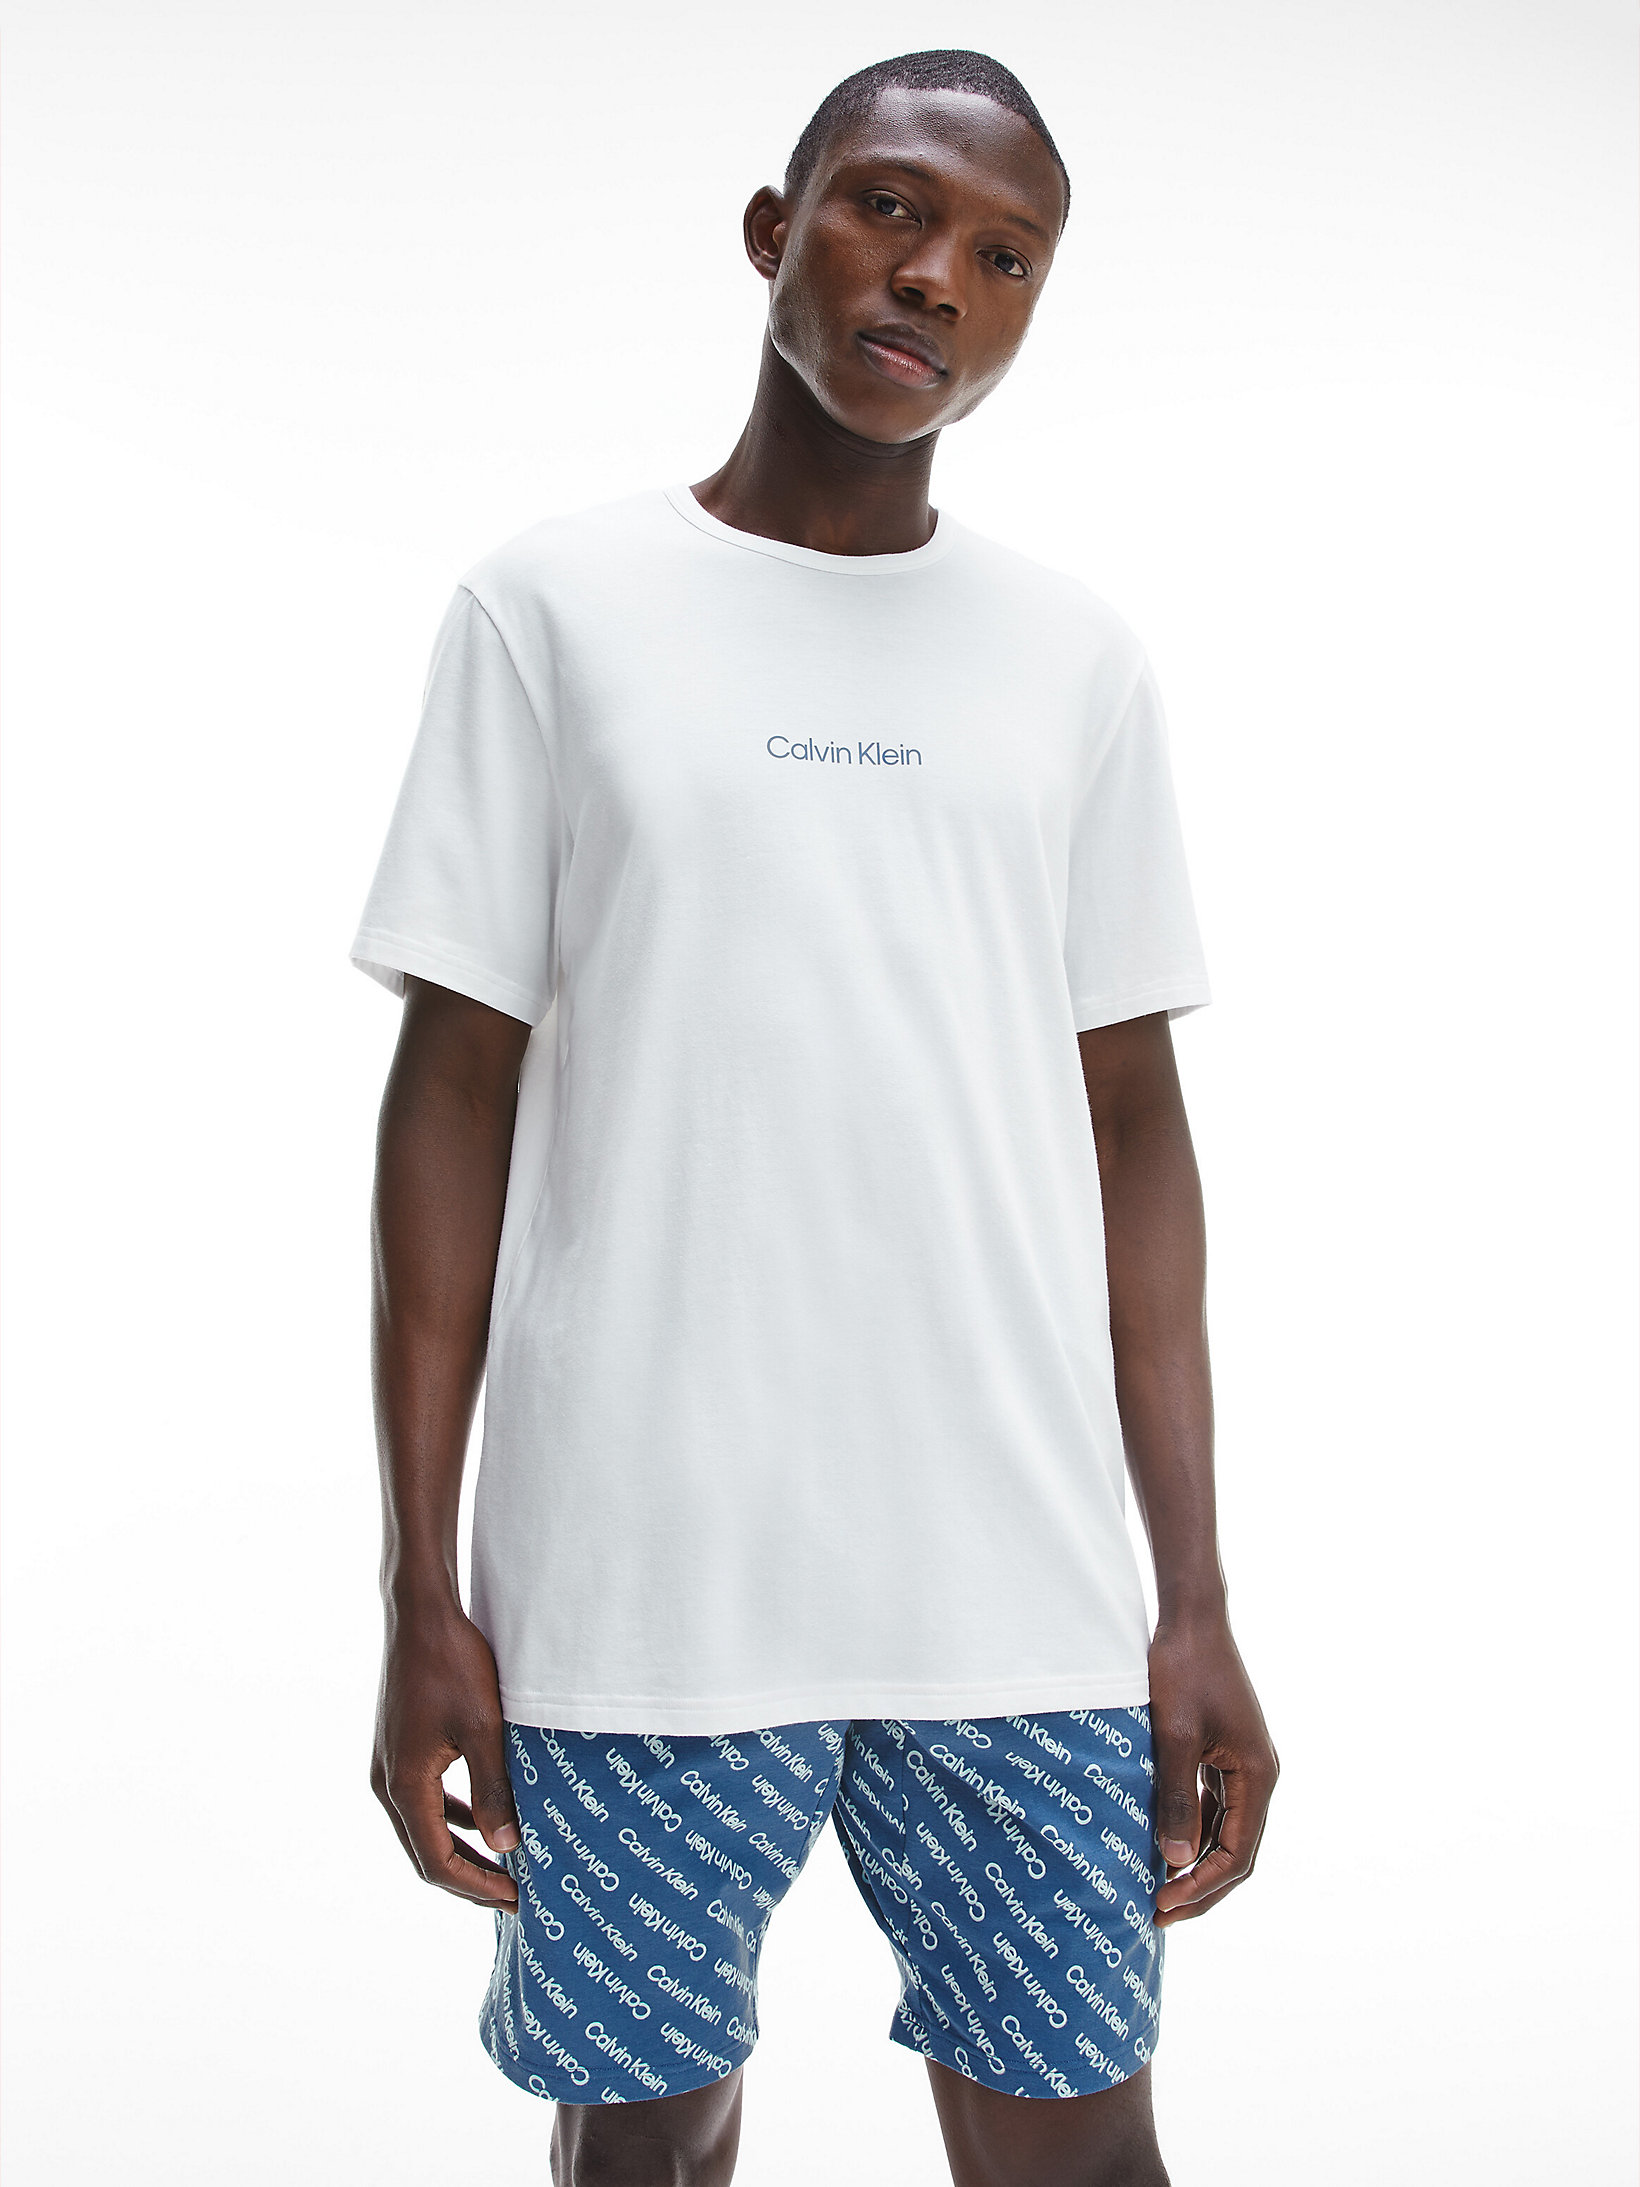 Ensemble De Pyjama Court - Modern Structure > White Top, 45 Shadow Logo Bottom > undefined hommes > Calvin Klein